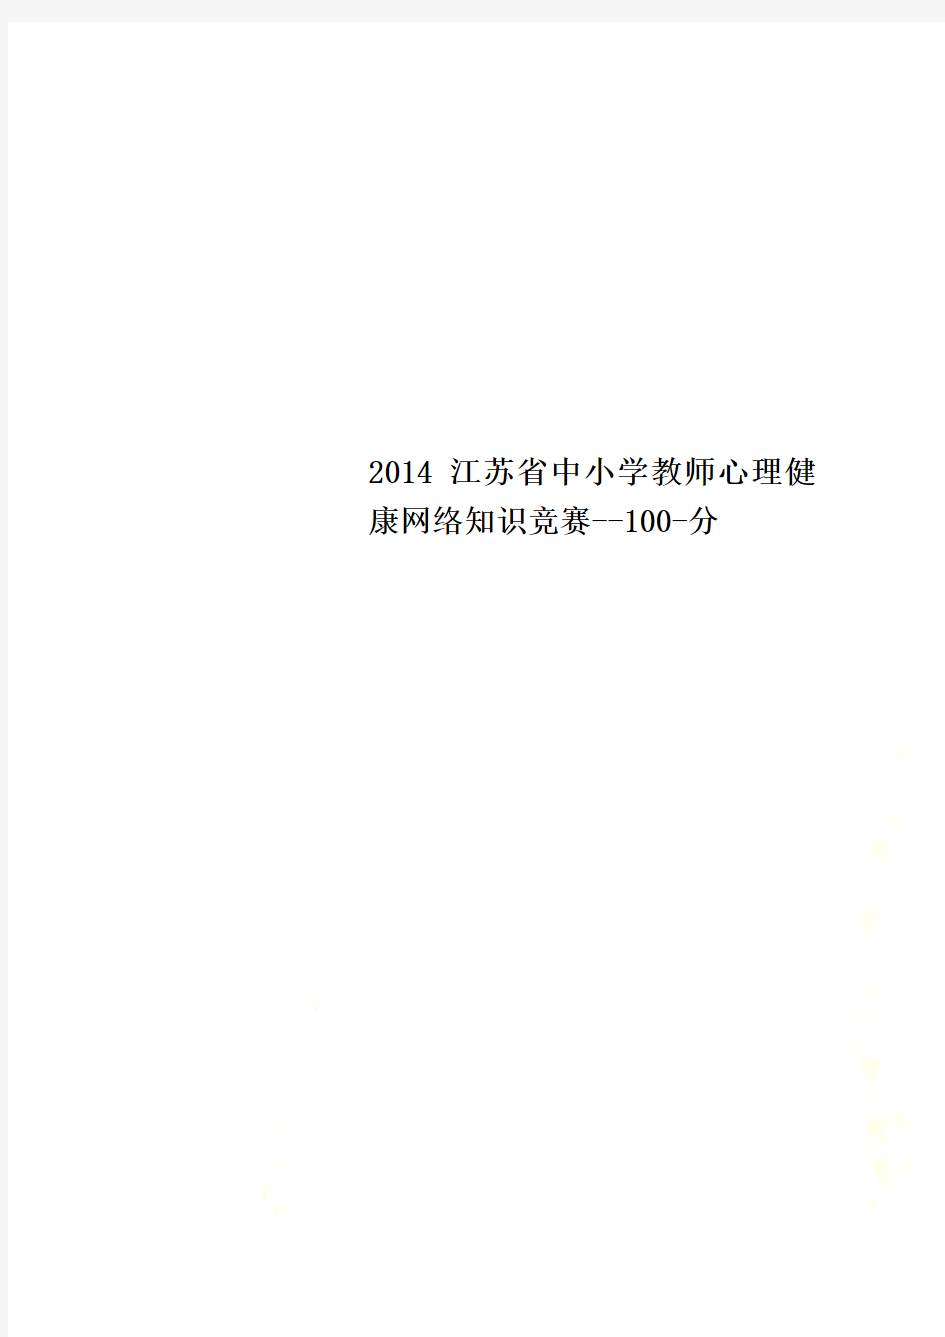 2014江苏省中小学教师心理健康网络知识竞赛--100-分